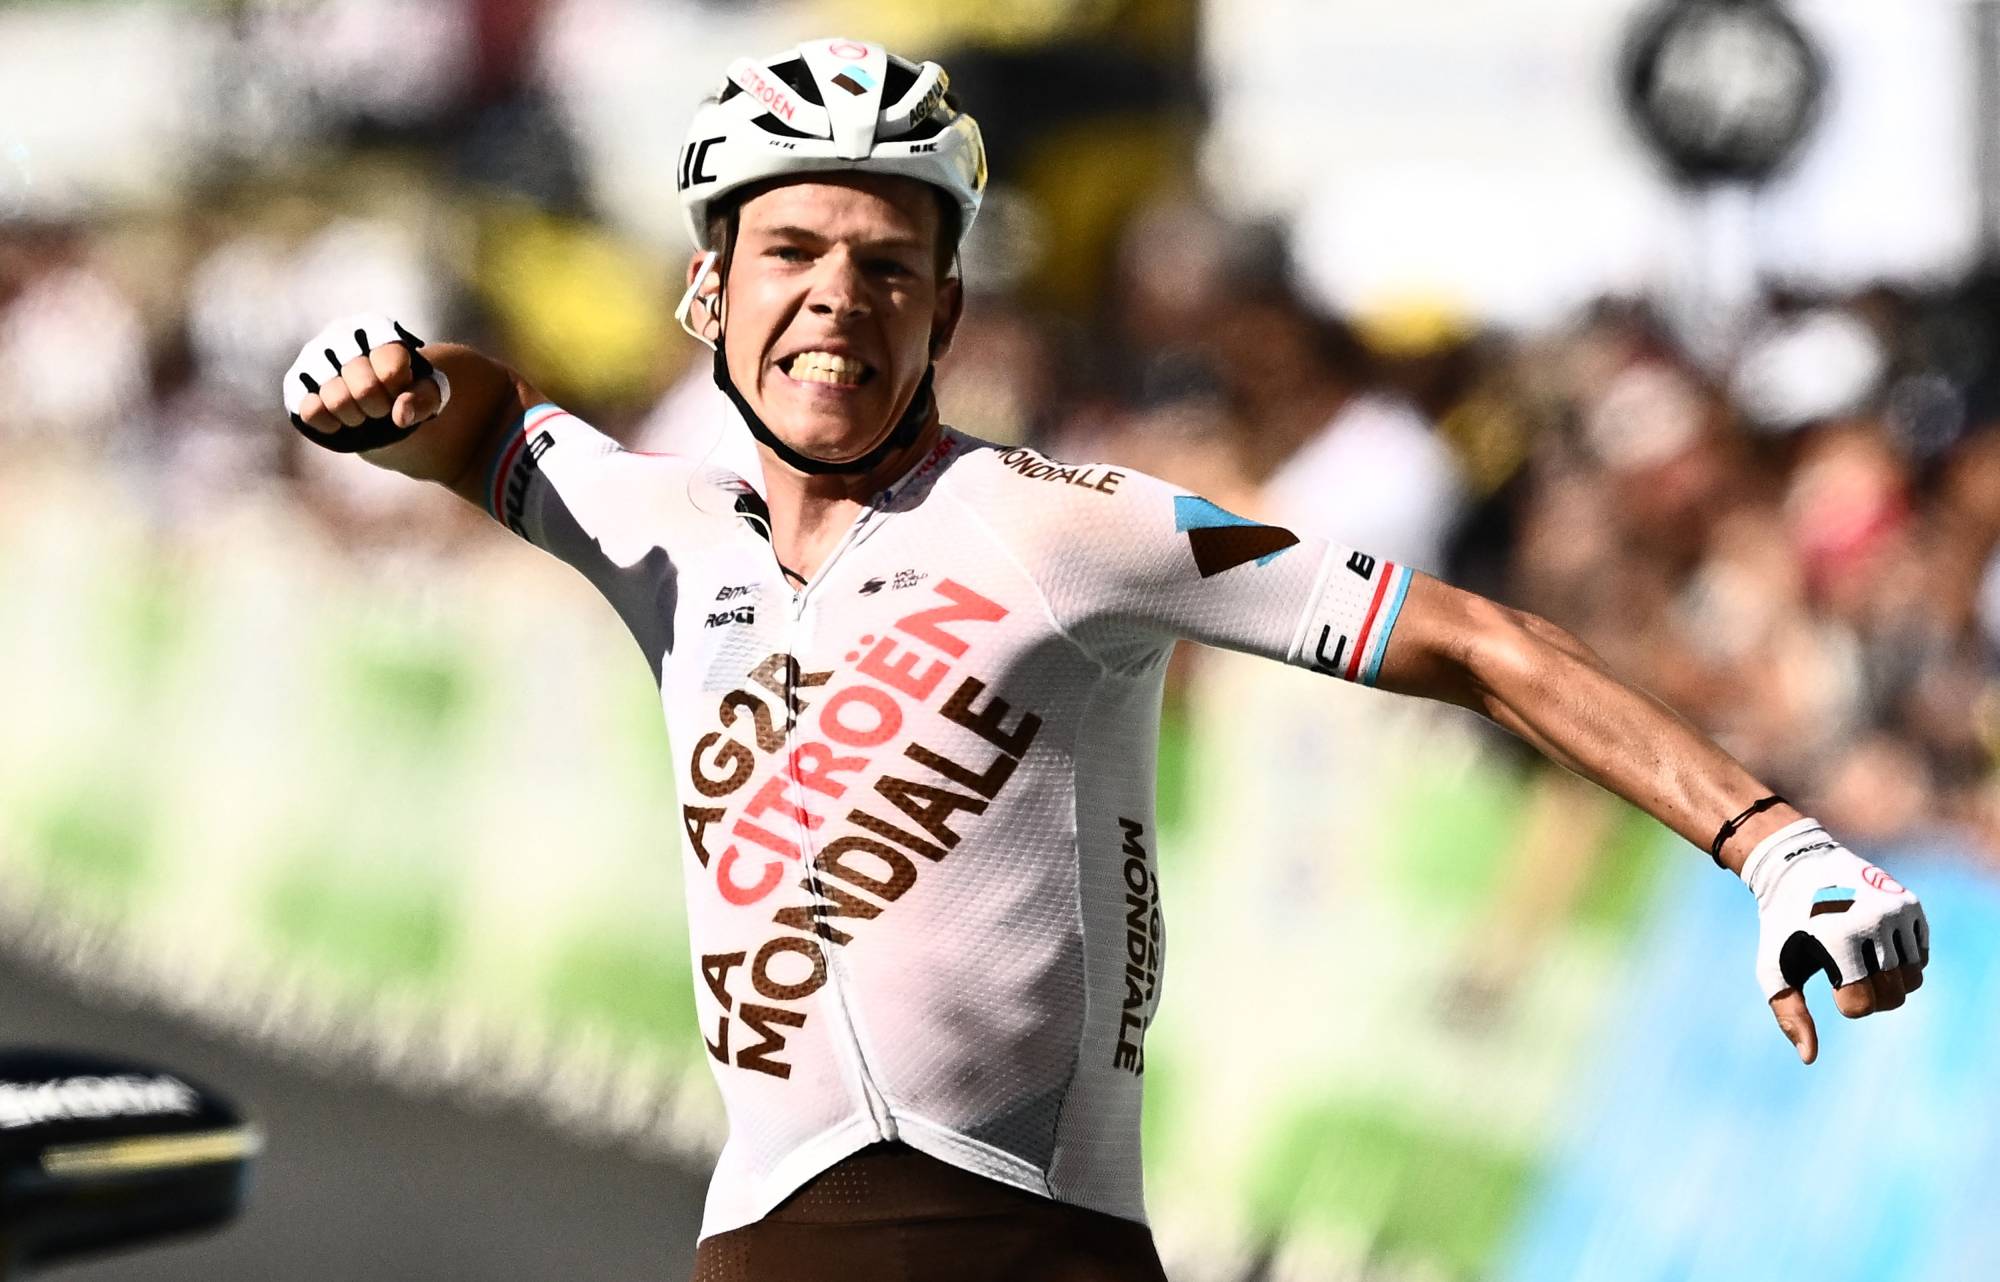 Bob Jungels wins Stage 9 of Tour de France The Japan Times